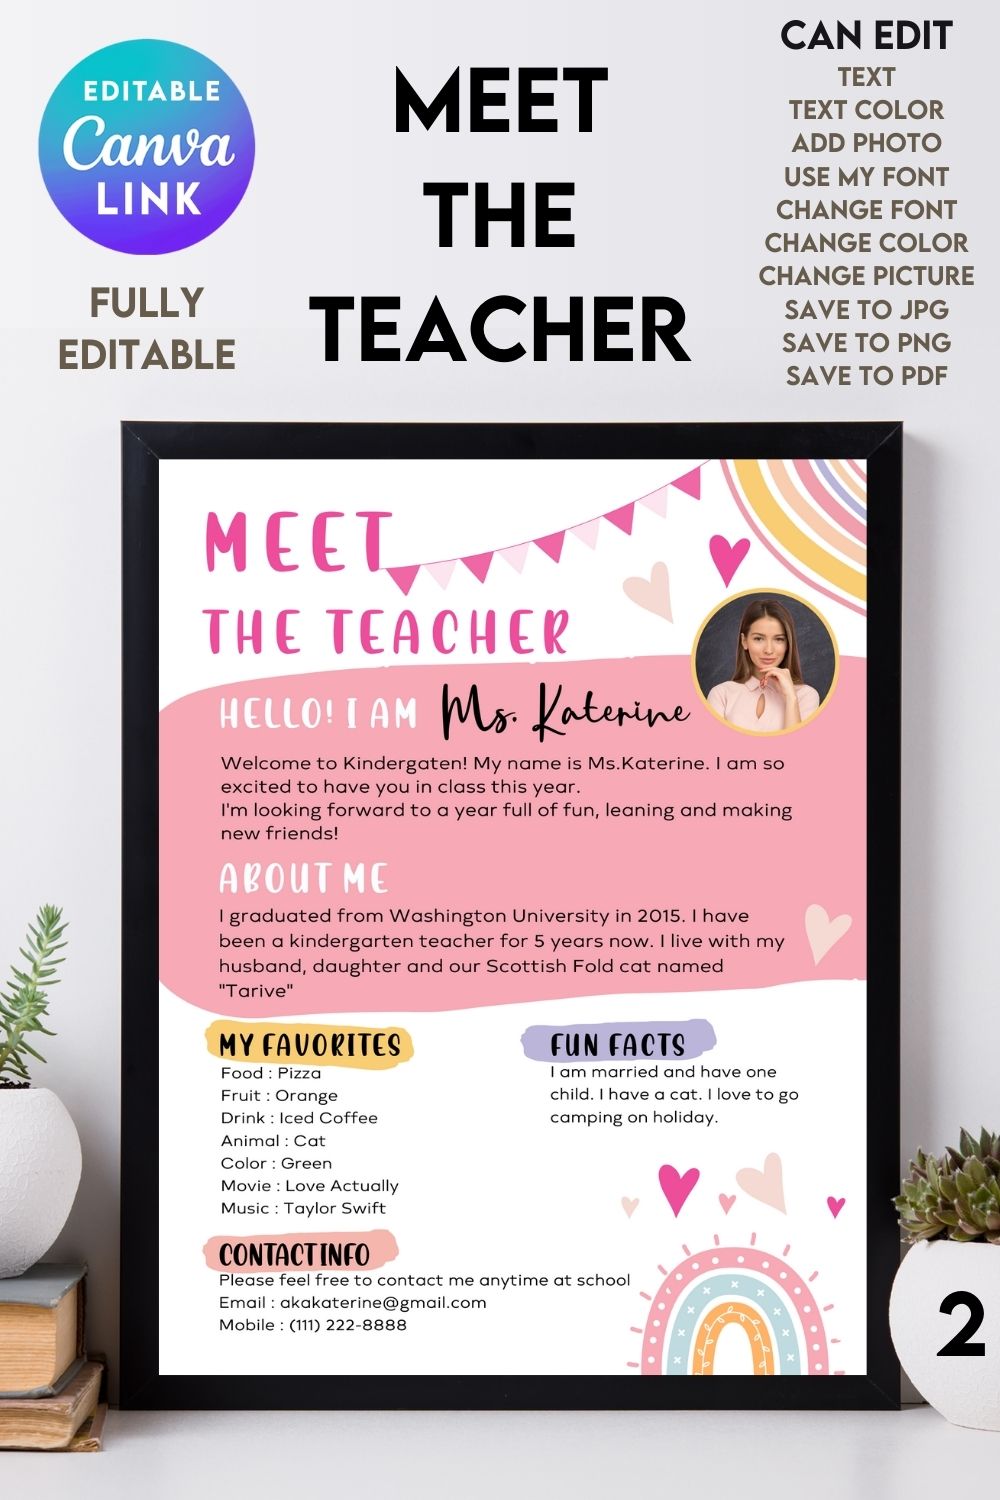 Meet the Teacher#2 - Canva Template pinterest preview image.